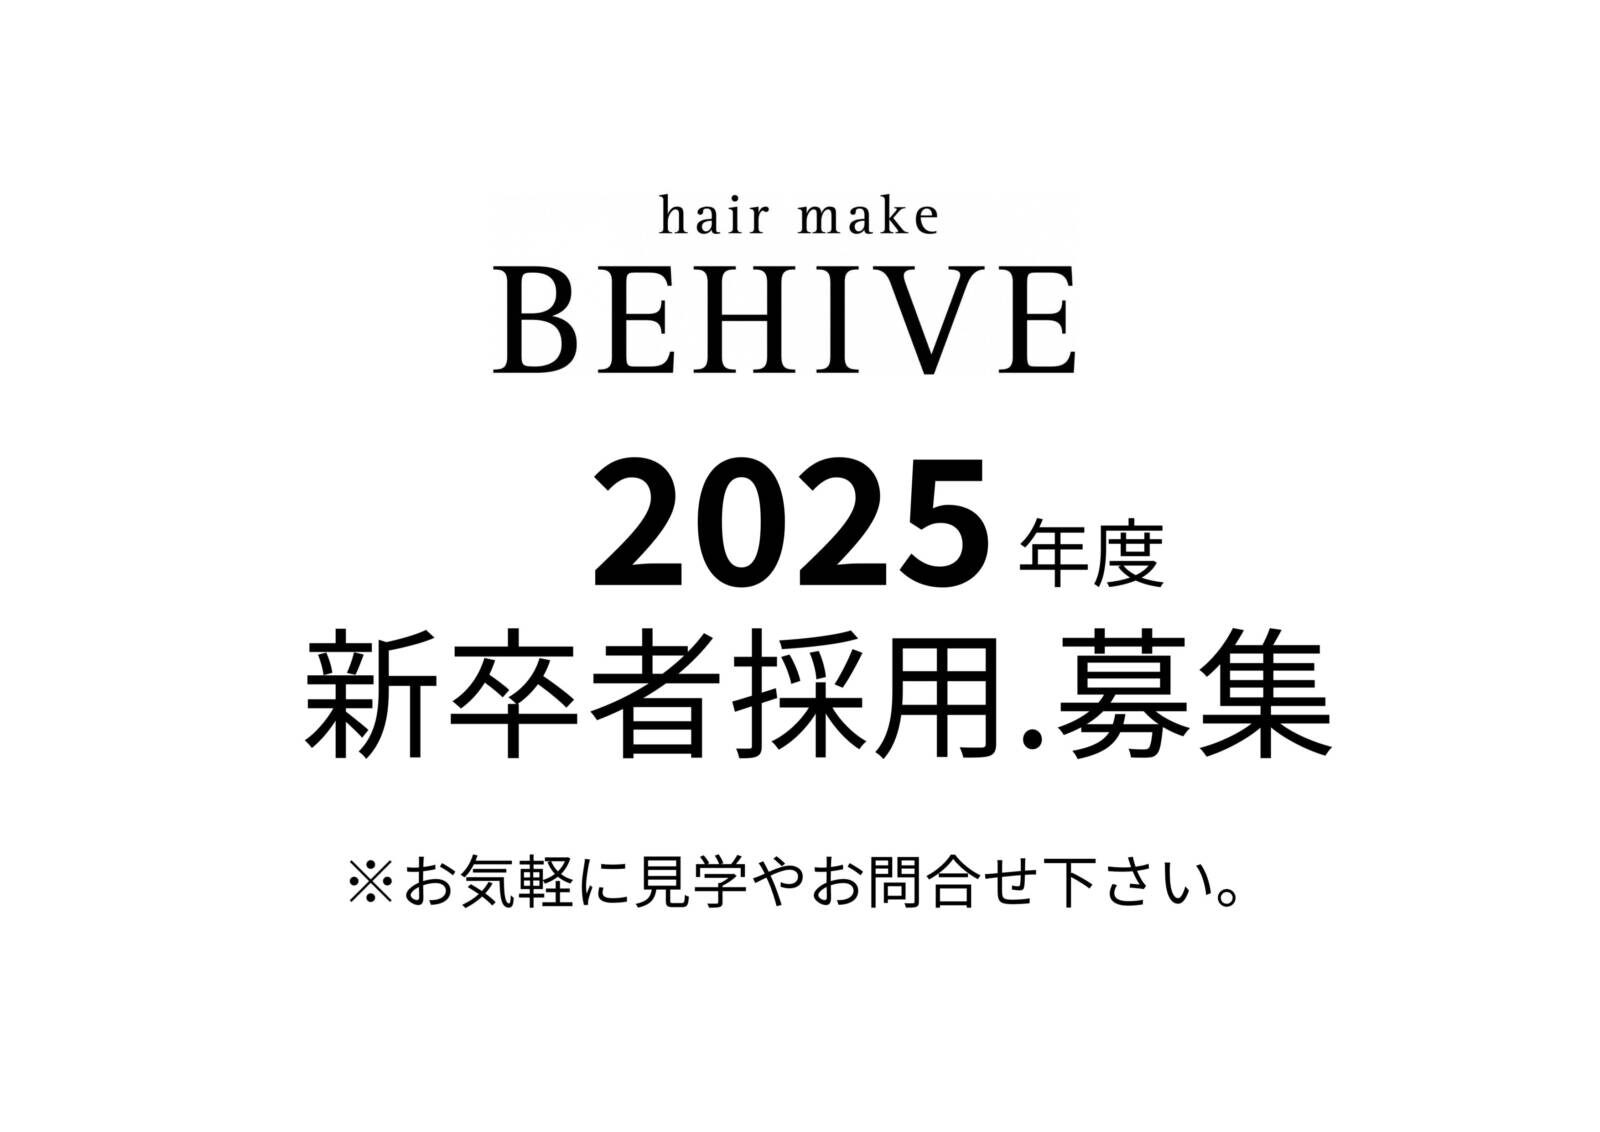 BEHIVE.2025新卒者募集。